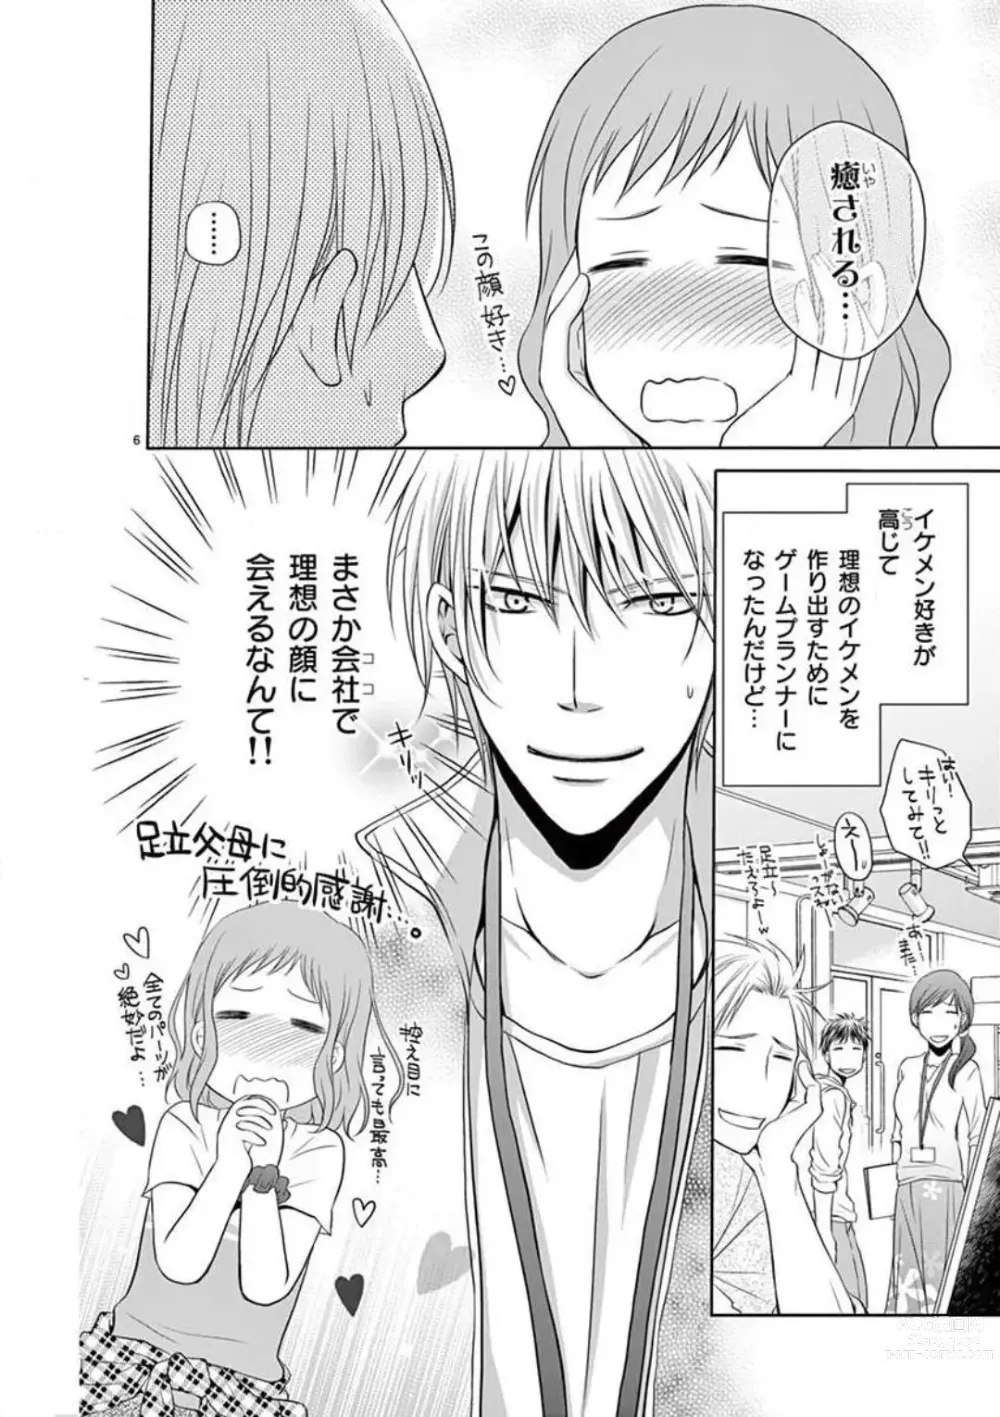 Page 6 of manga Senpai Gentei no Kedamonodesukara 〜 Kanshō-yō Ikemen no Hotobashiru Aijō〜 1-4